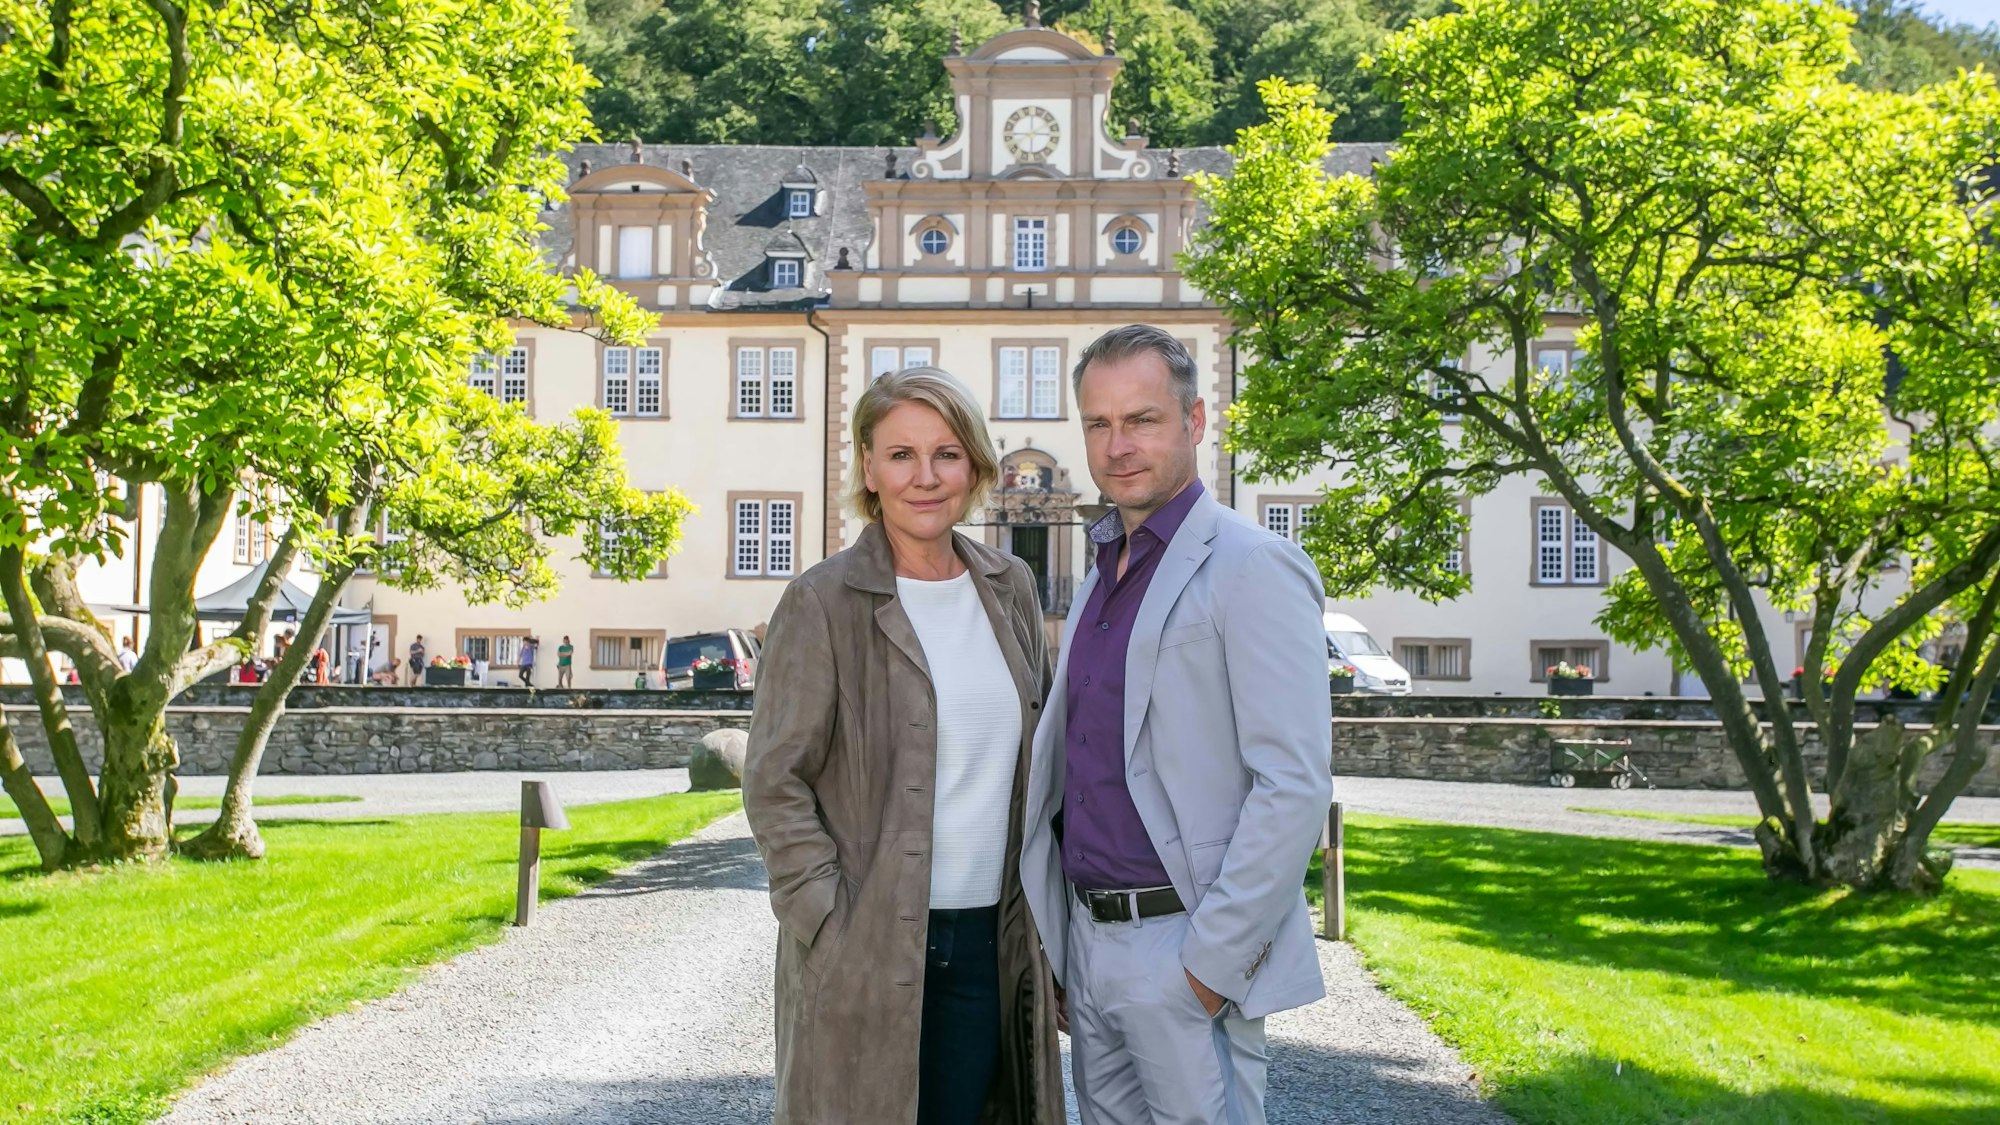 Mariele Millowitsch und Hinnerk Schönemann posieren vor dem Schloss Ehreshoven in Engelskirchen für die Kamera.